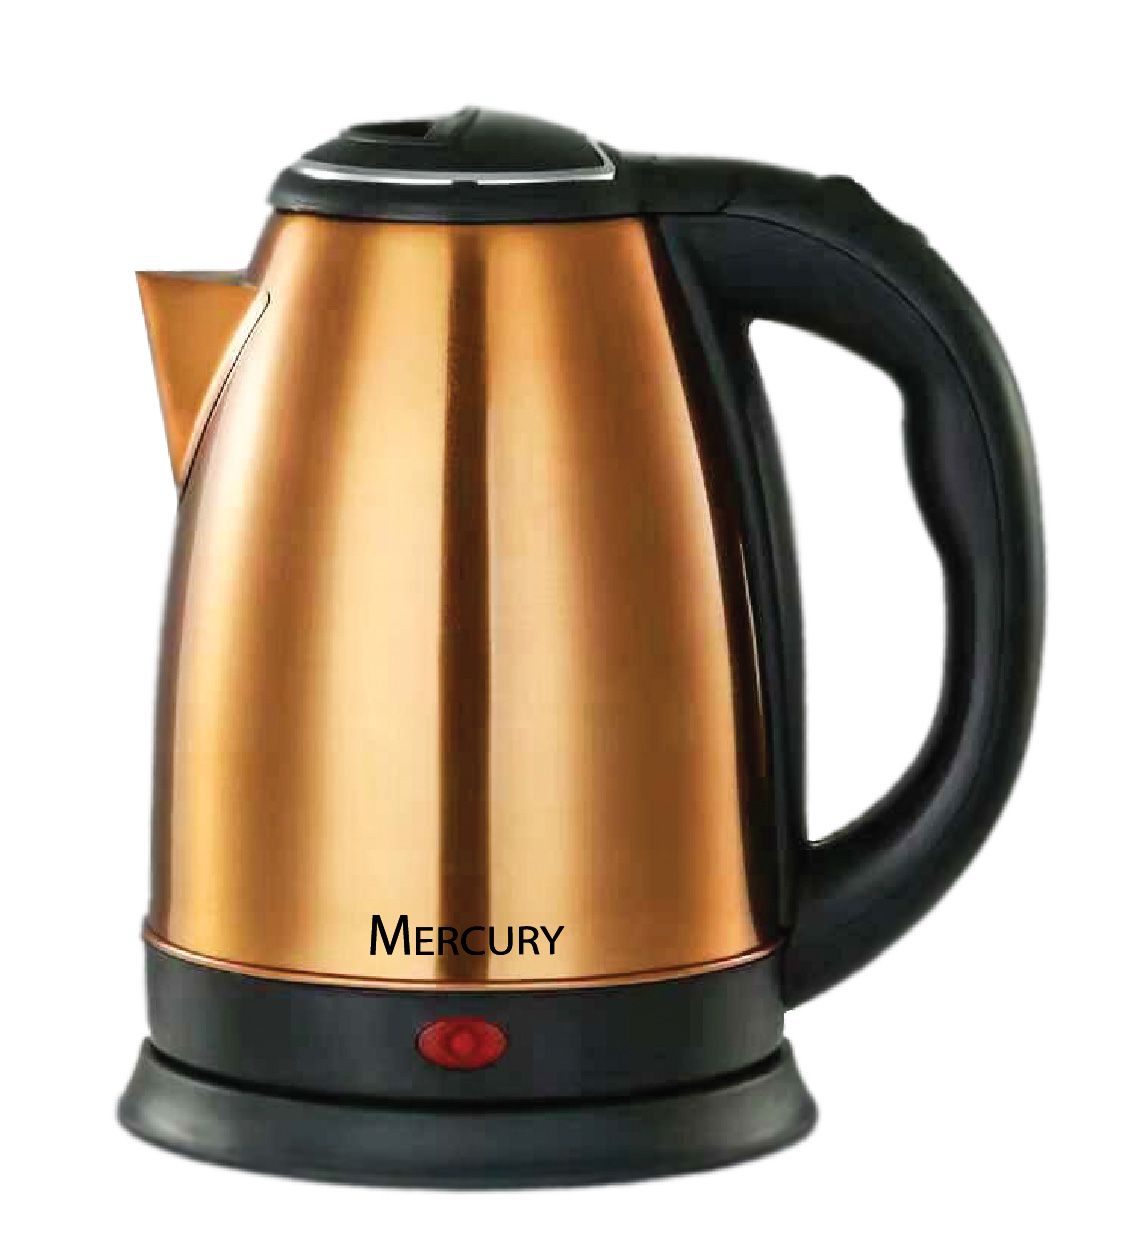 Купить чайник электрический в минске. Чайник Mercury MC-6620/6621/6622/6623. Чайник Mercury MC-6622. Чайник Mercury mc6638. Чайник Mercury MC-6623 красный.